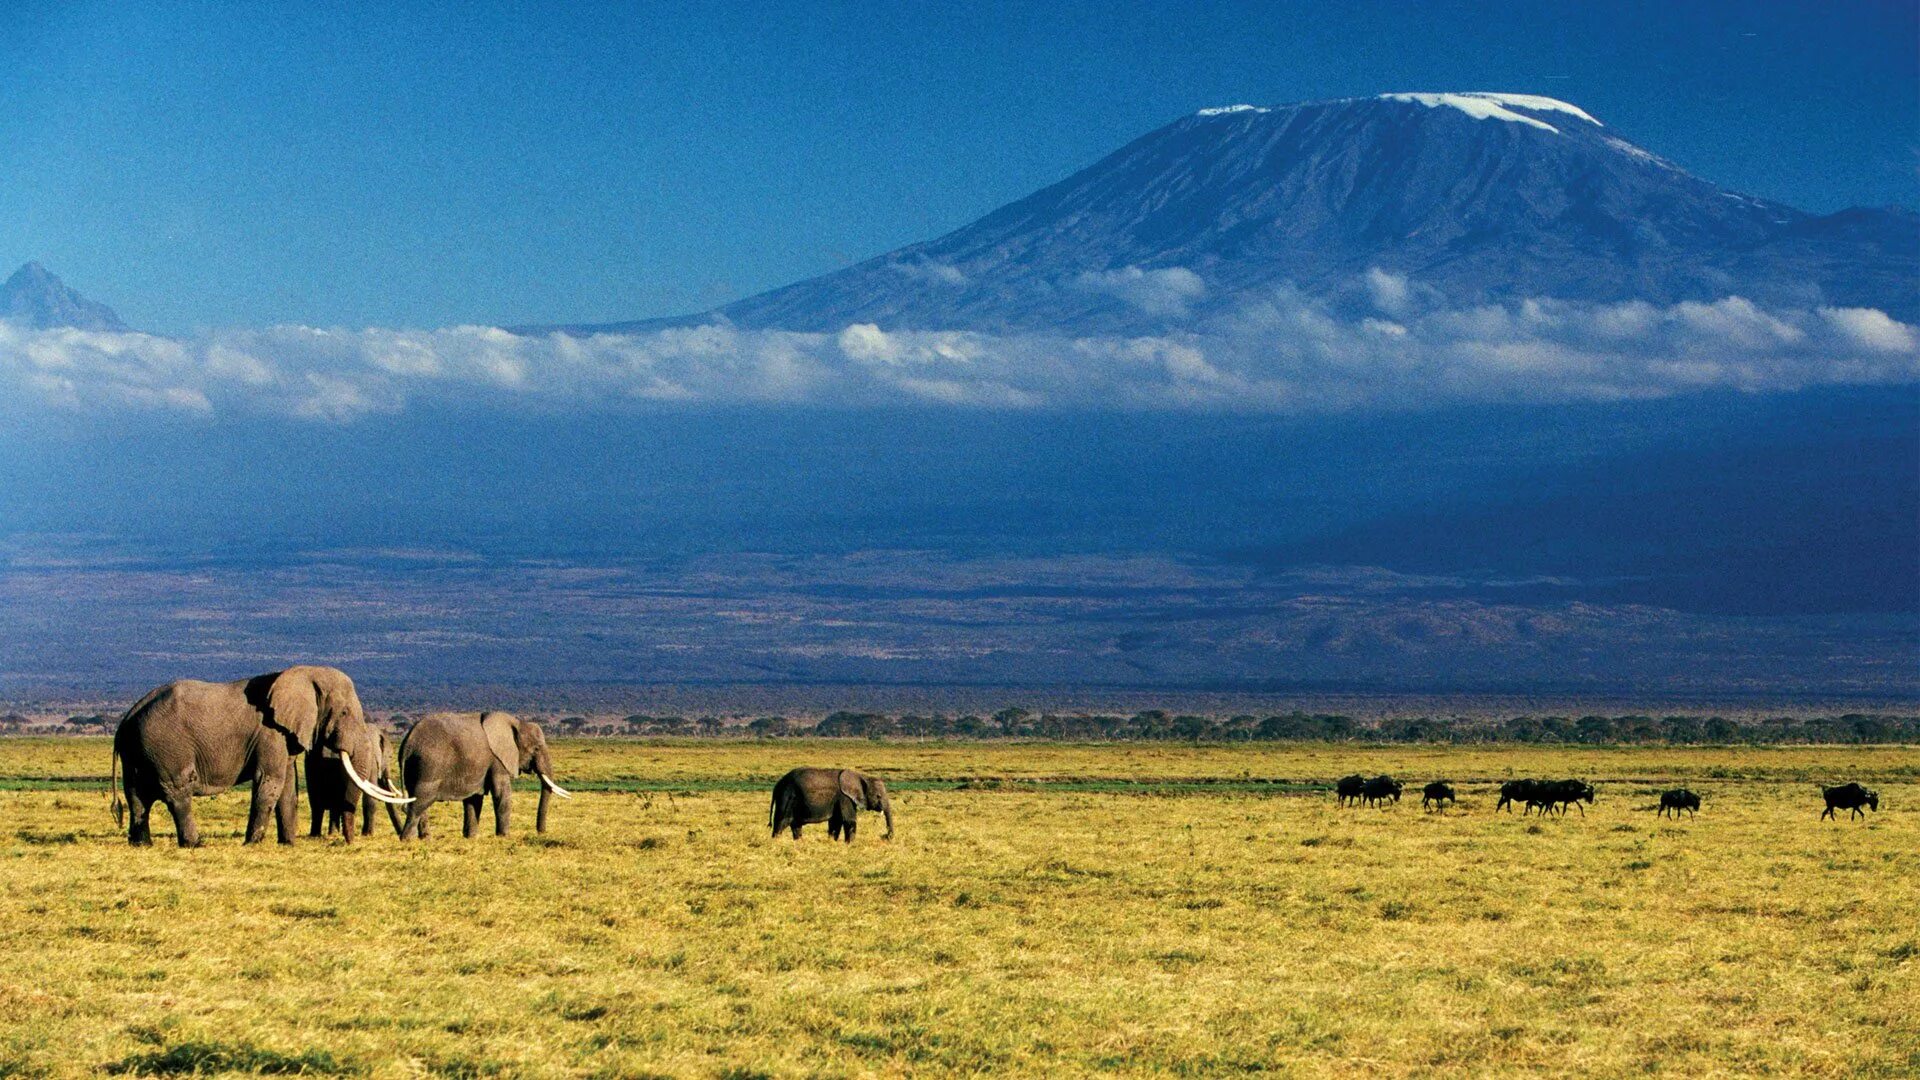 Килиманджаро хемингуэя. Танзания Килиманджаро. Танзания гора Килиманджаро. Гора Килиманджаро в Танзании, Африка. Саванна Килиманджаро.